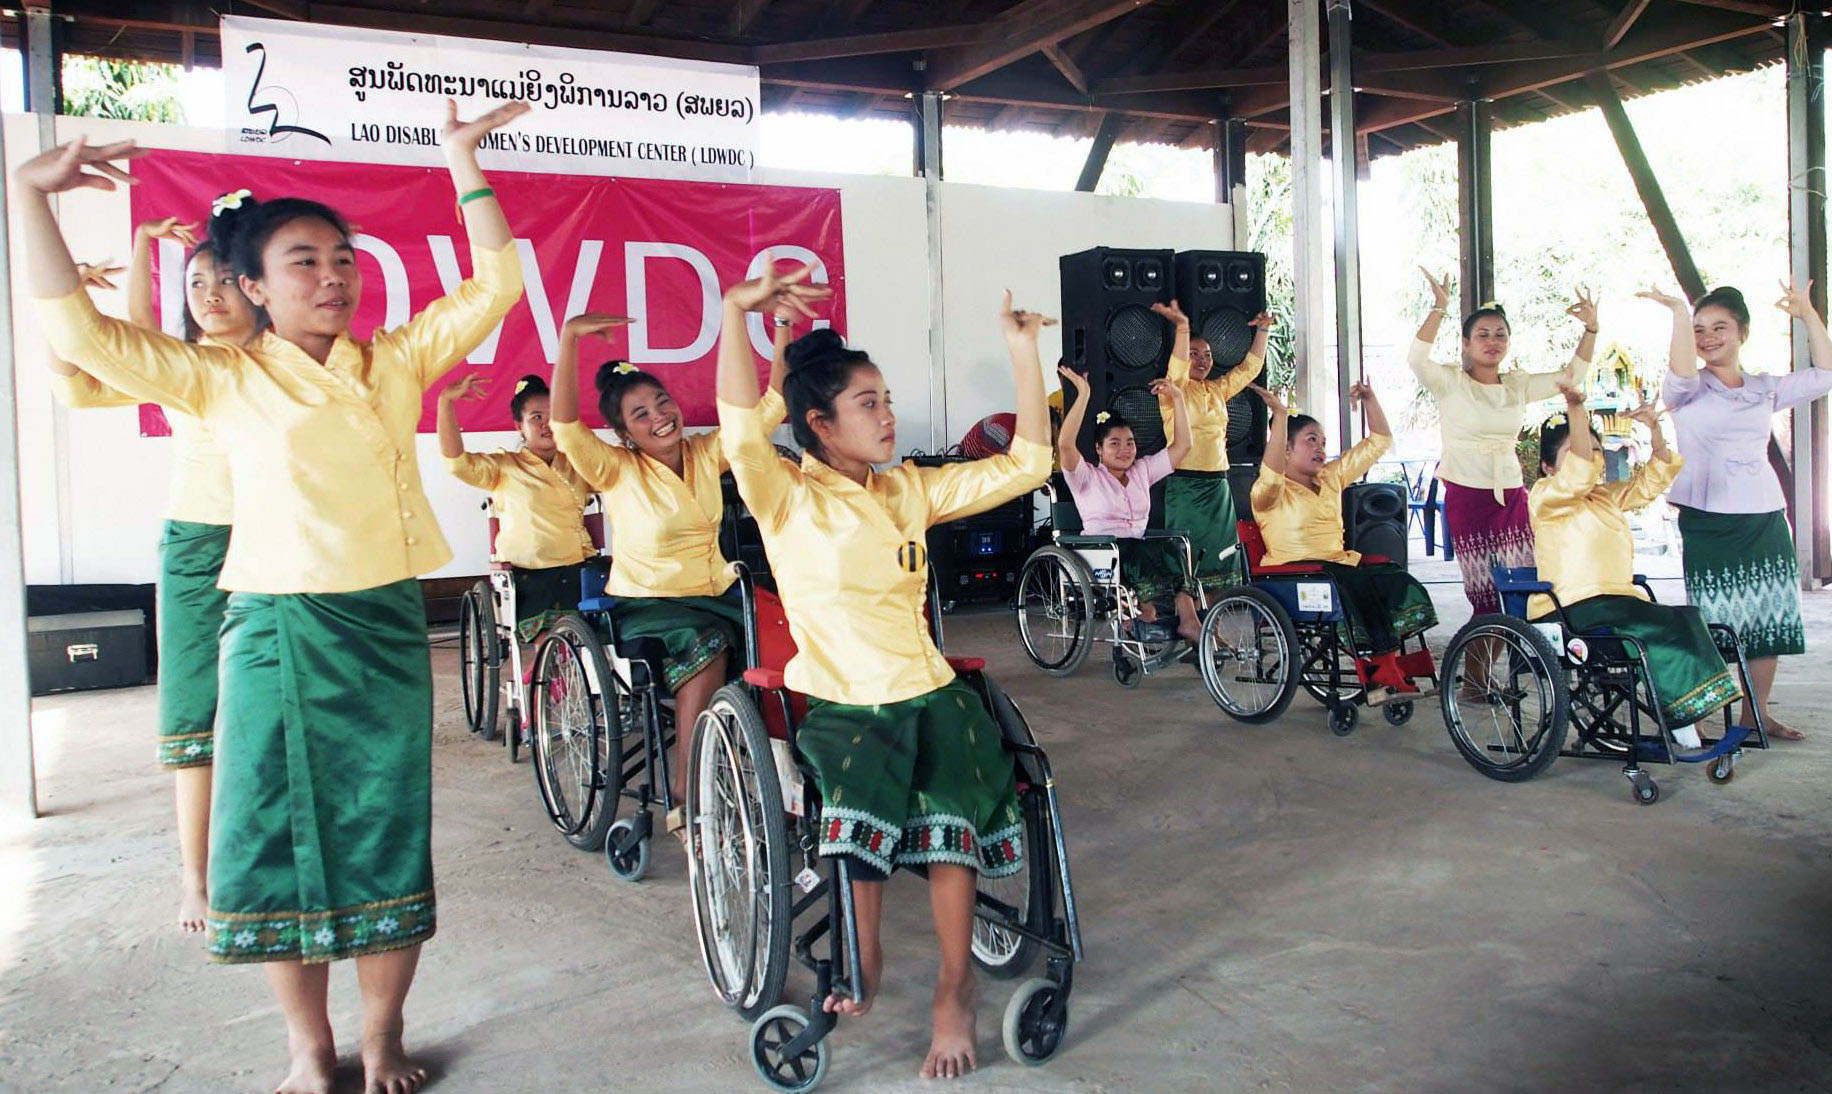 ການພັດທະນາດ້ານສັງຄົມ | Open Development Laos